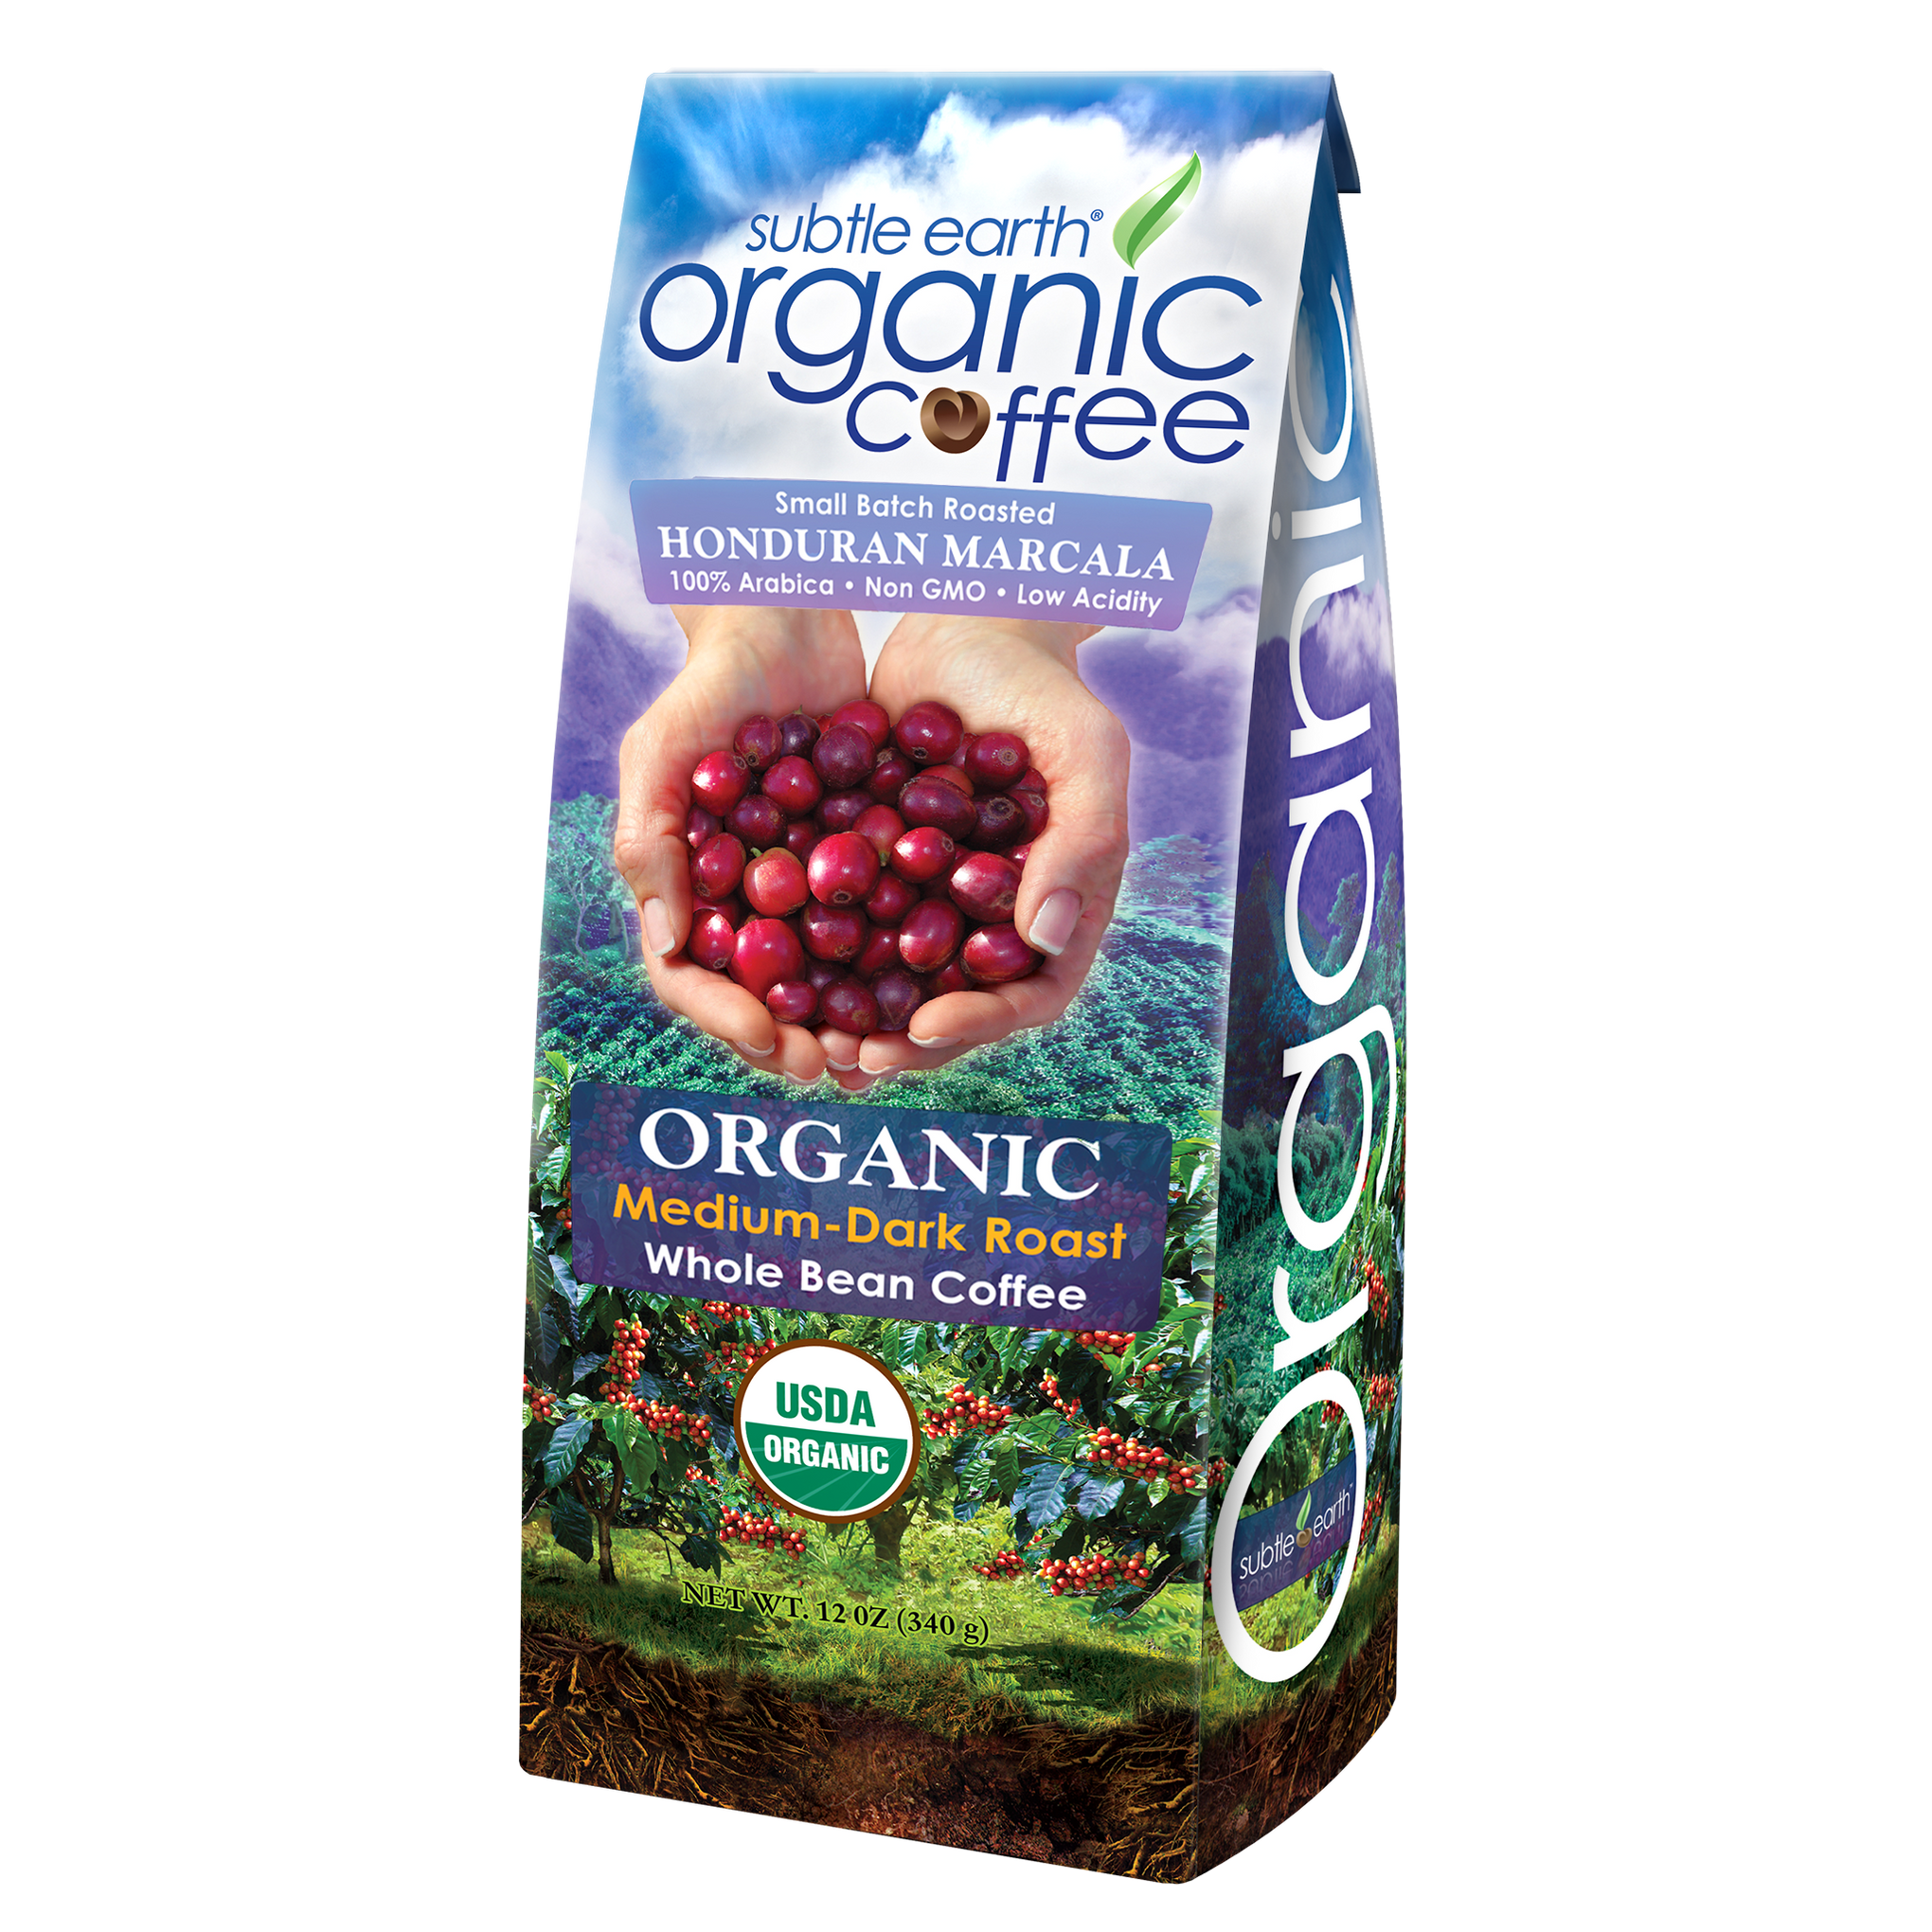 Subtle Earth Organic Medium-dark Roast Coffee 12 oz Bag 